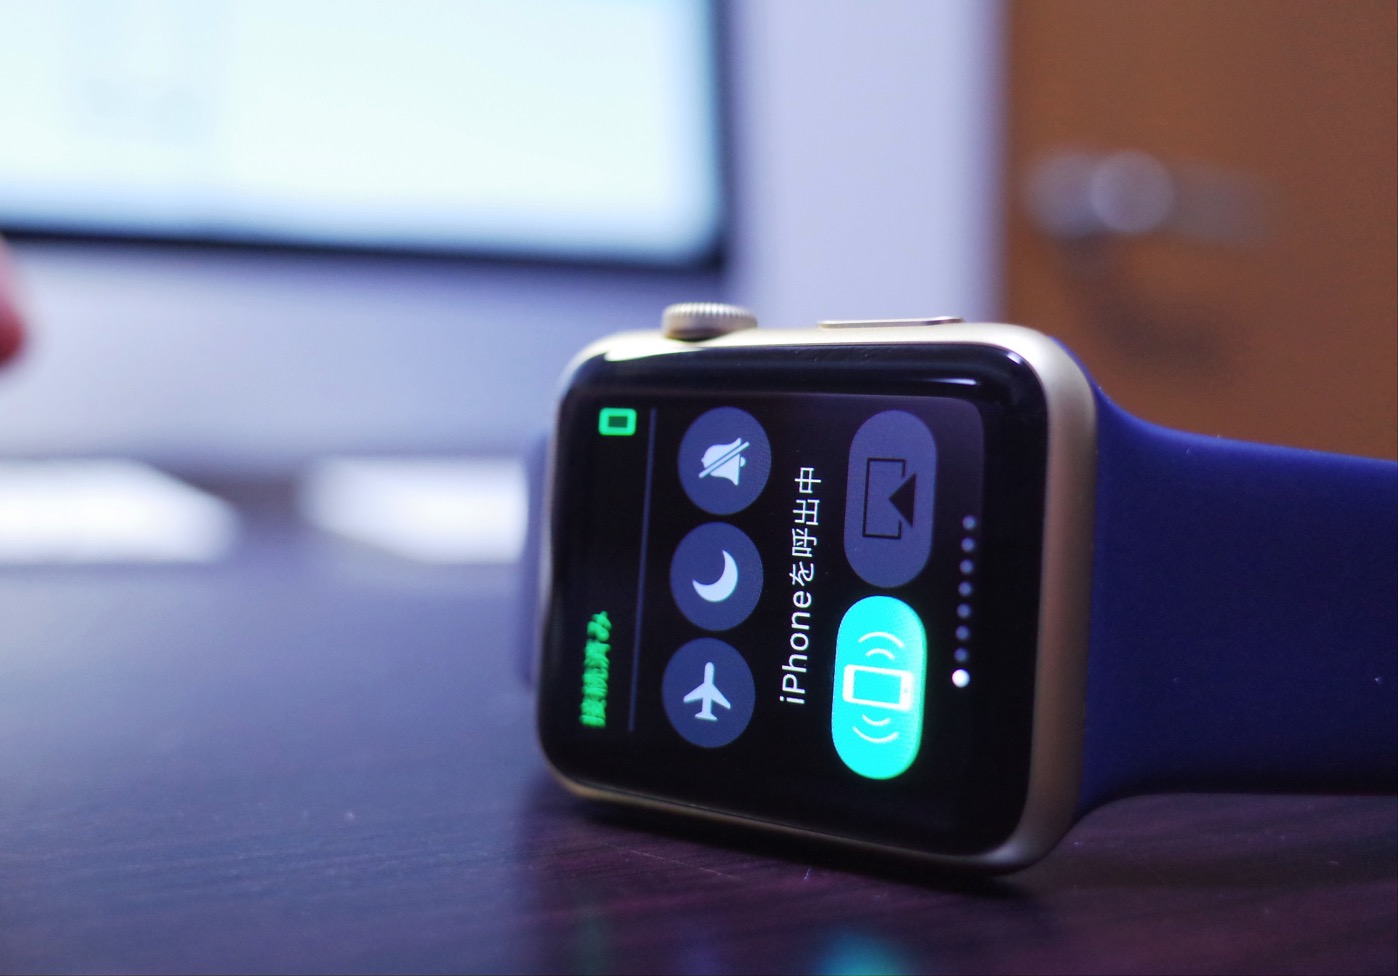 [Apple]100%失敗しないApple Watchスクリーンショットの取り方をシェアするよ